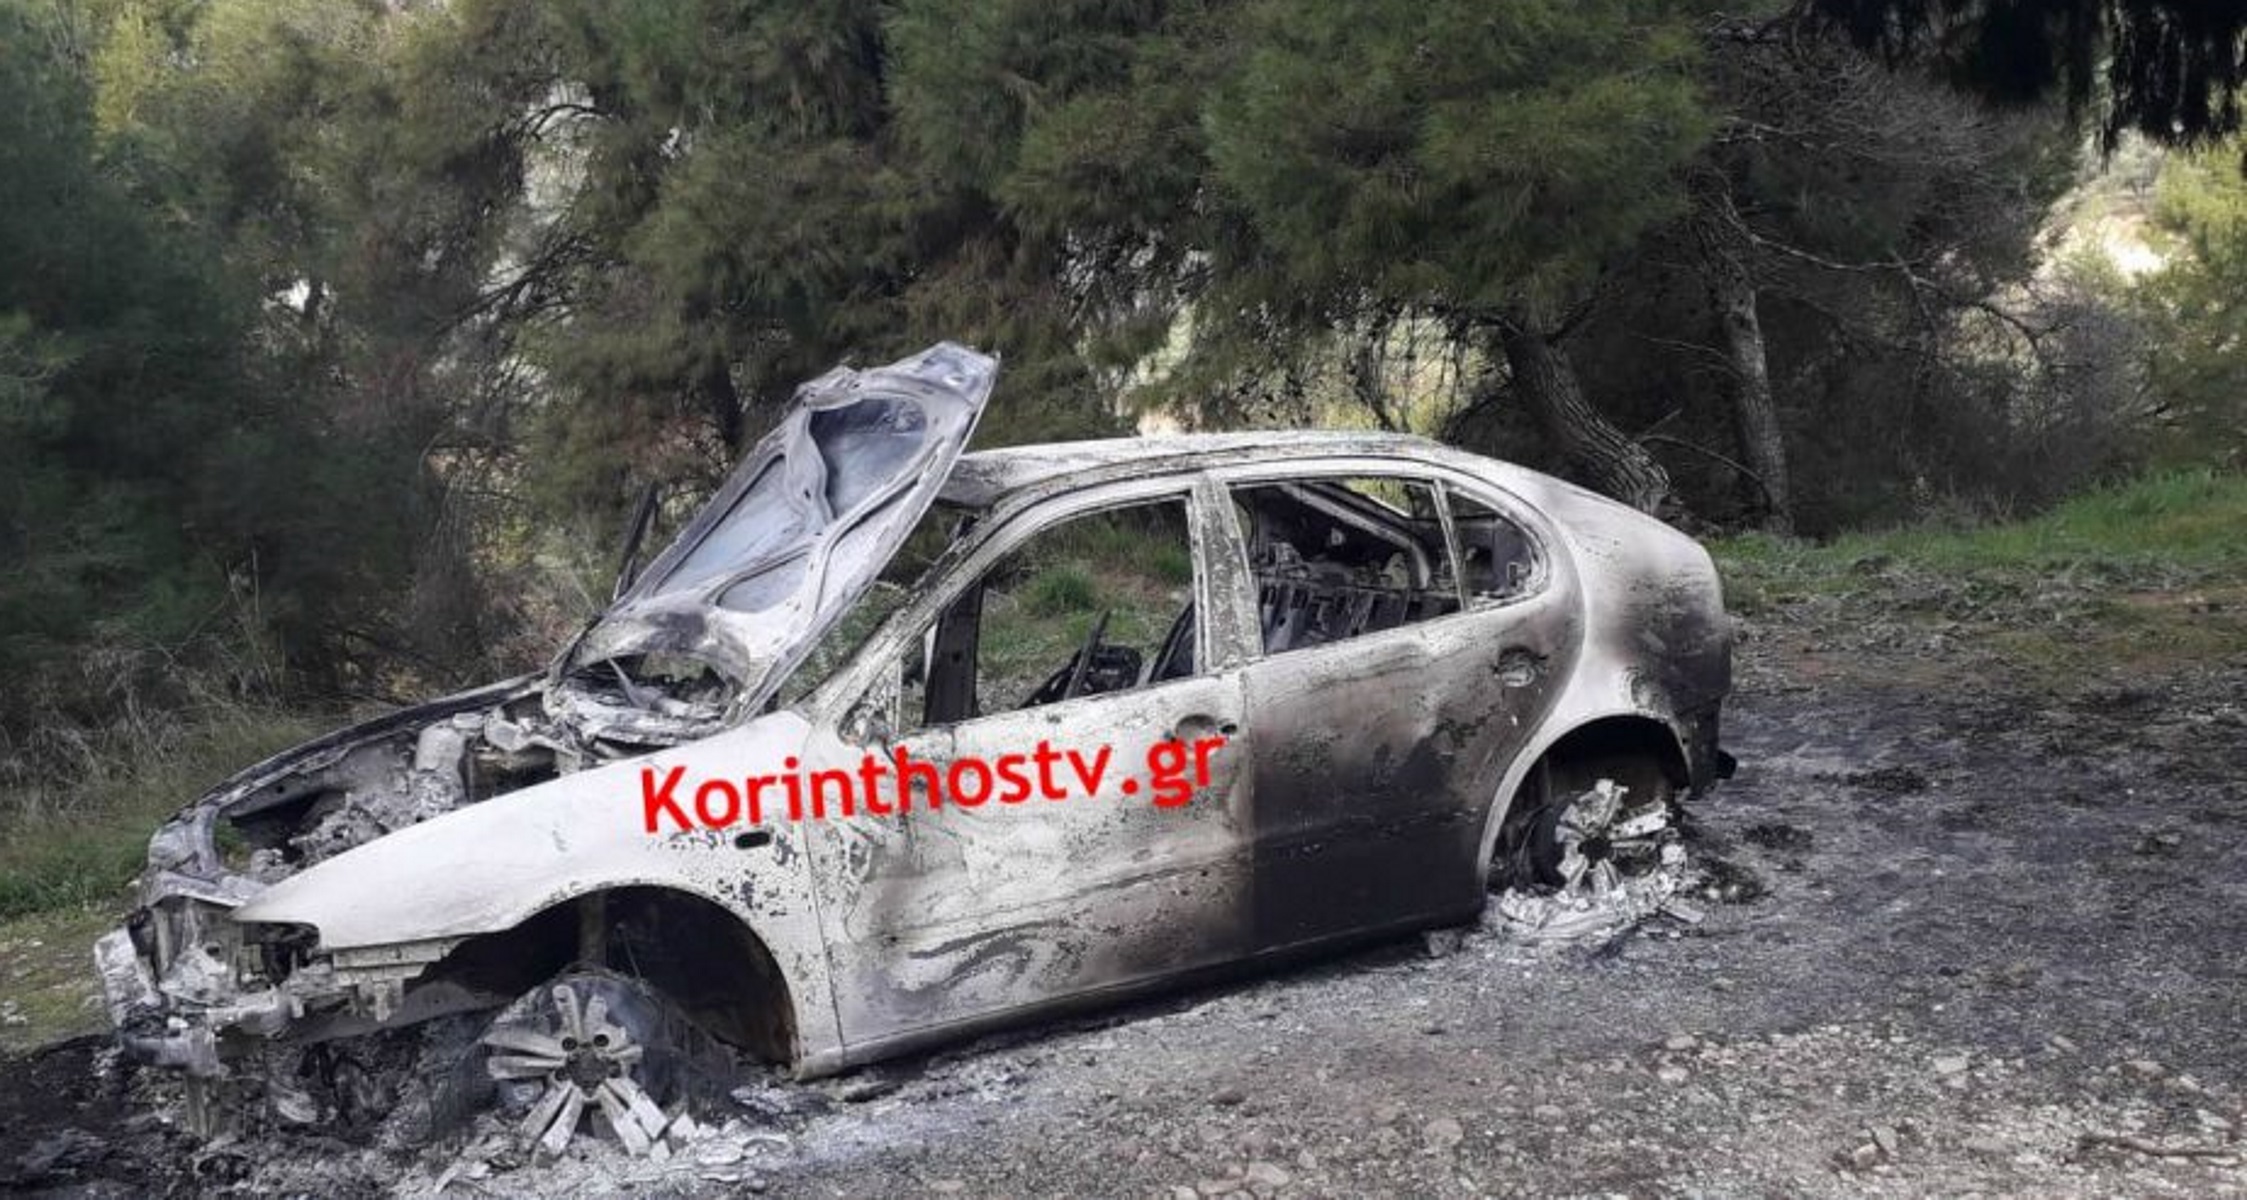 Κόρινθος: Λήστεψαν ταχυδρομείο και έκαψαν το αυτοκίνητο διαφυγής τους [Pics]